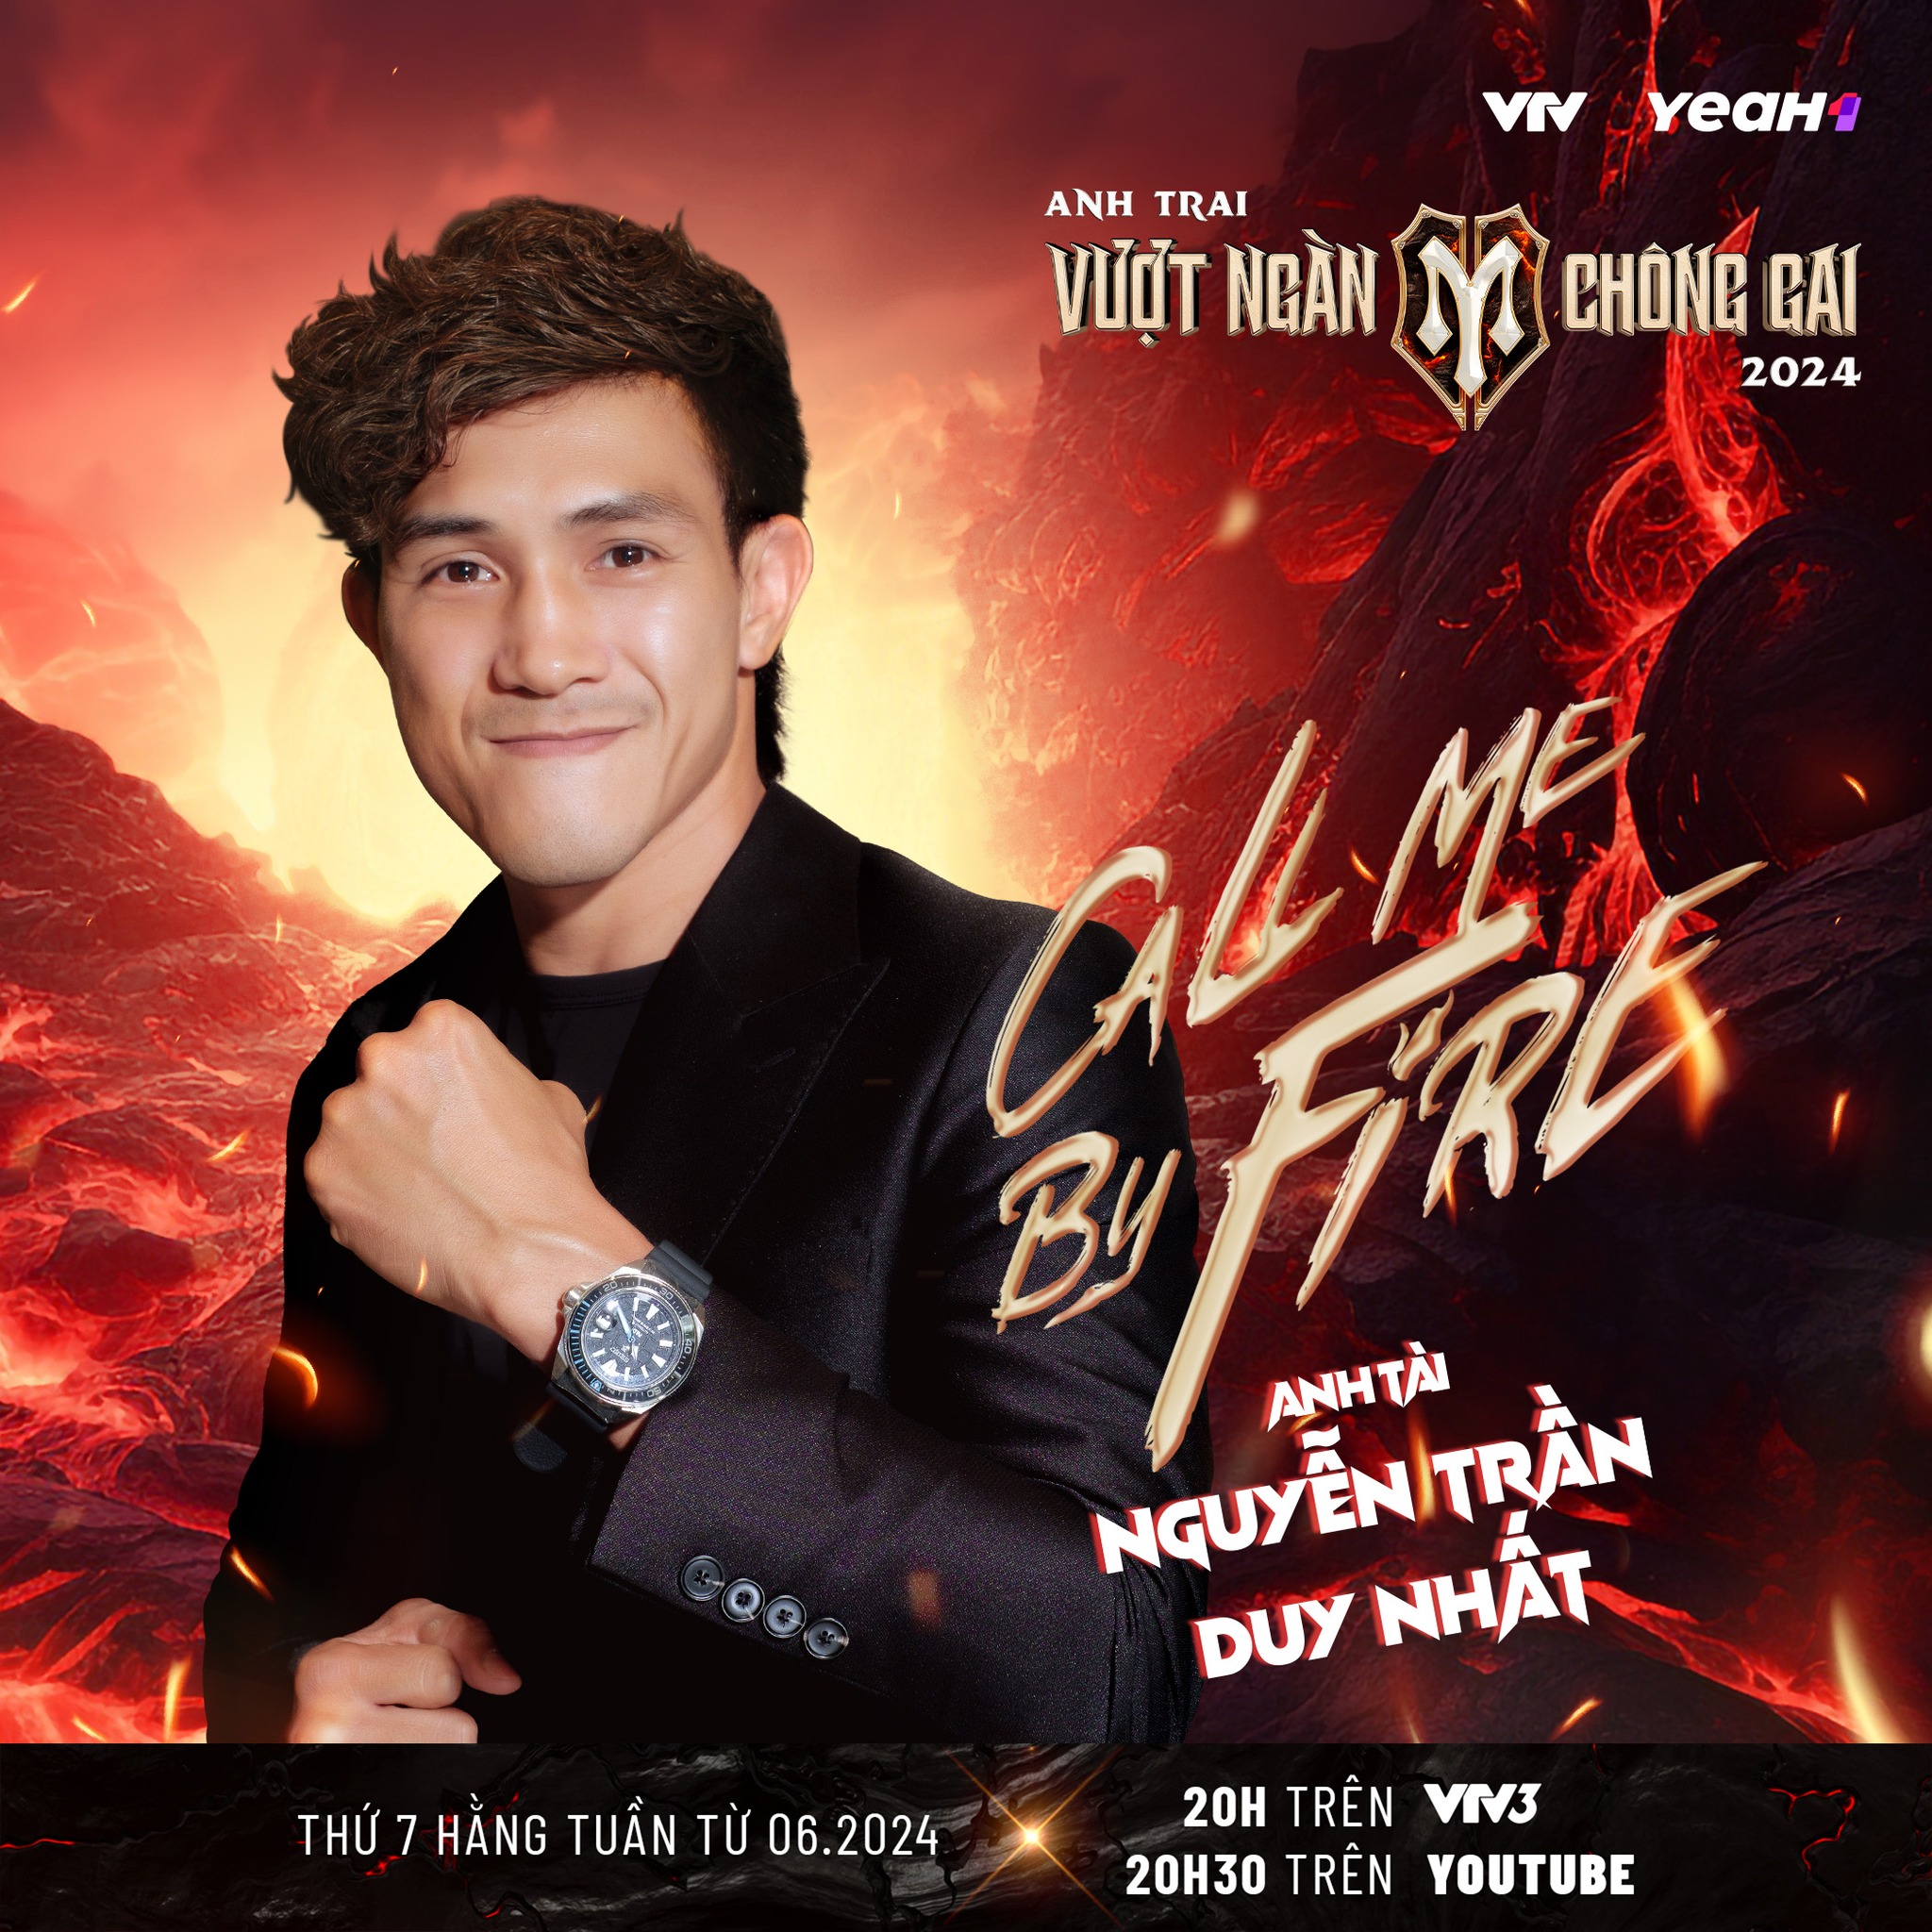 Võ sĩ vô địch thế giới Nguyễn Trần Duy Nhất khoe giọng hát tại gameshow "Anh trai vượt ngàn chông gai"